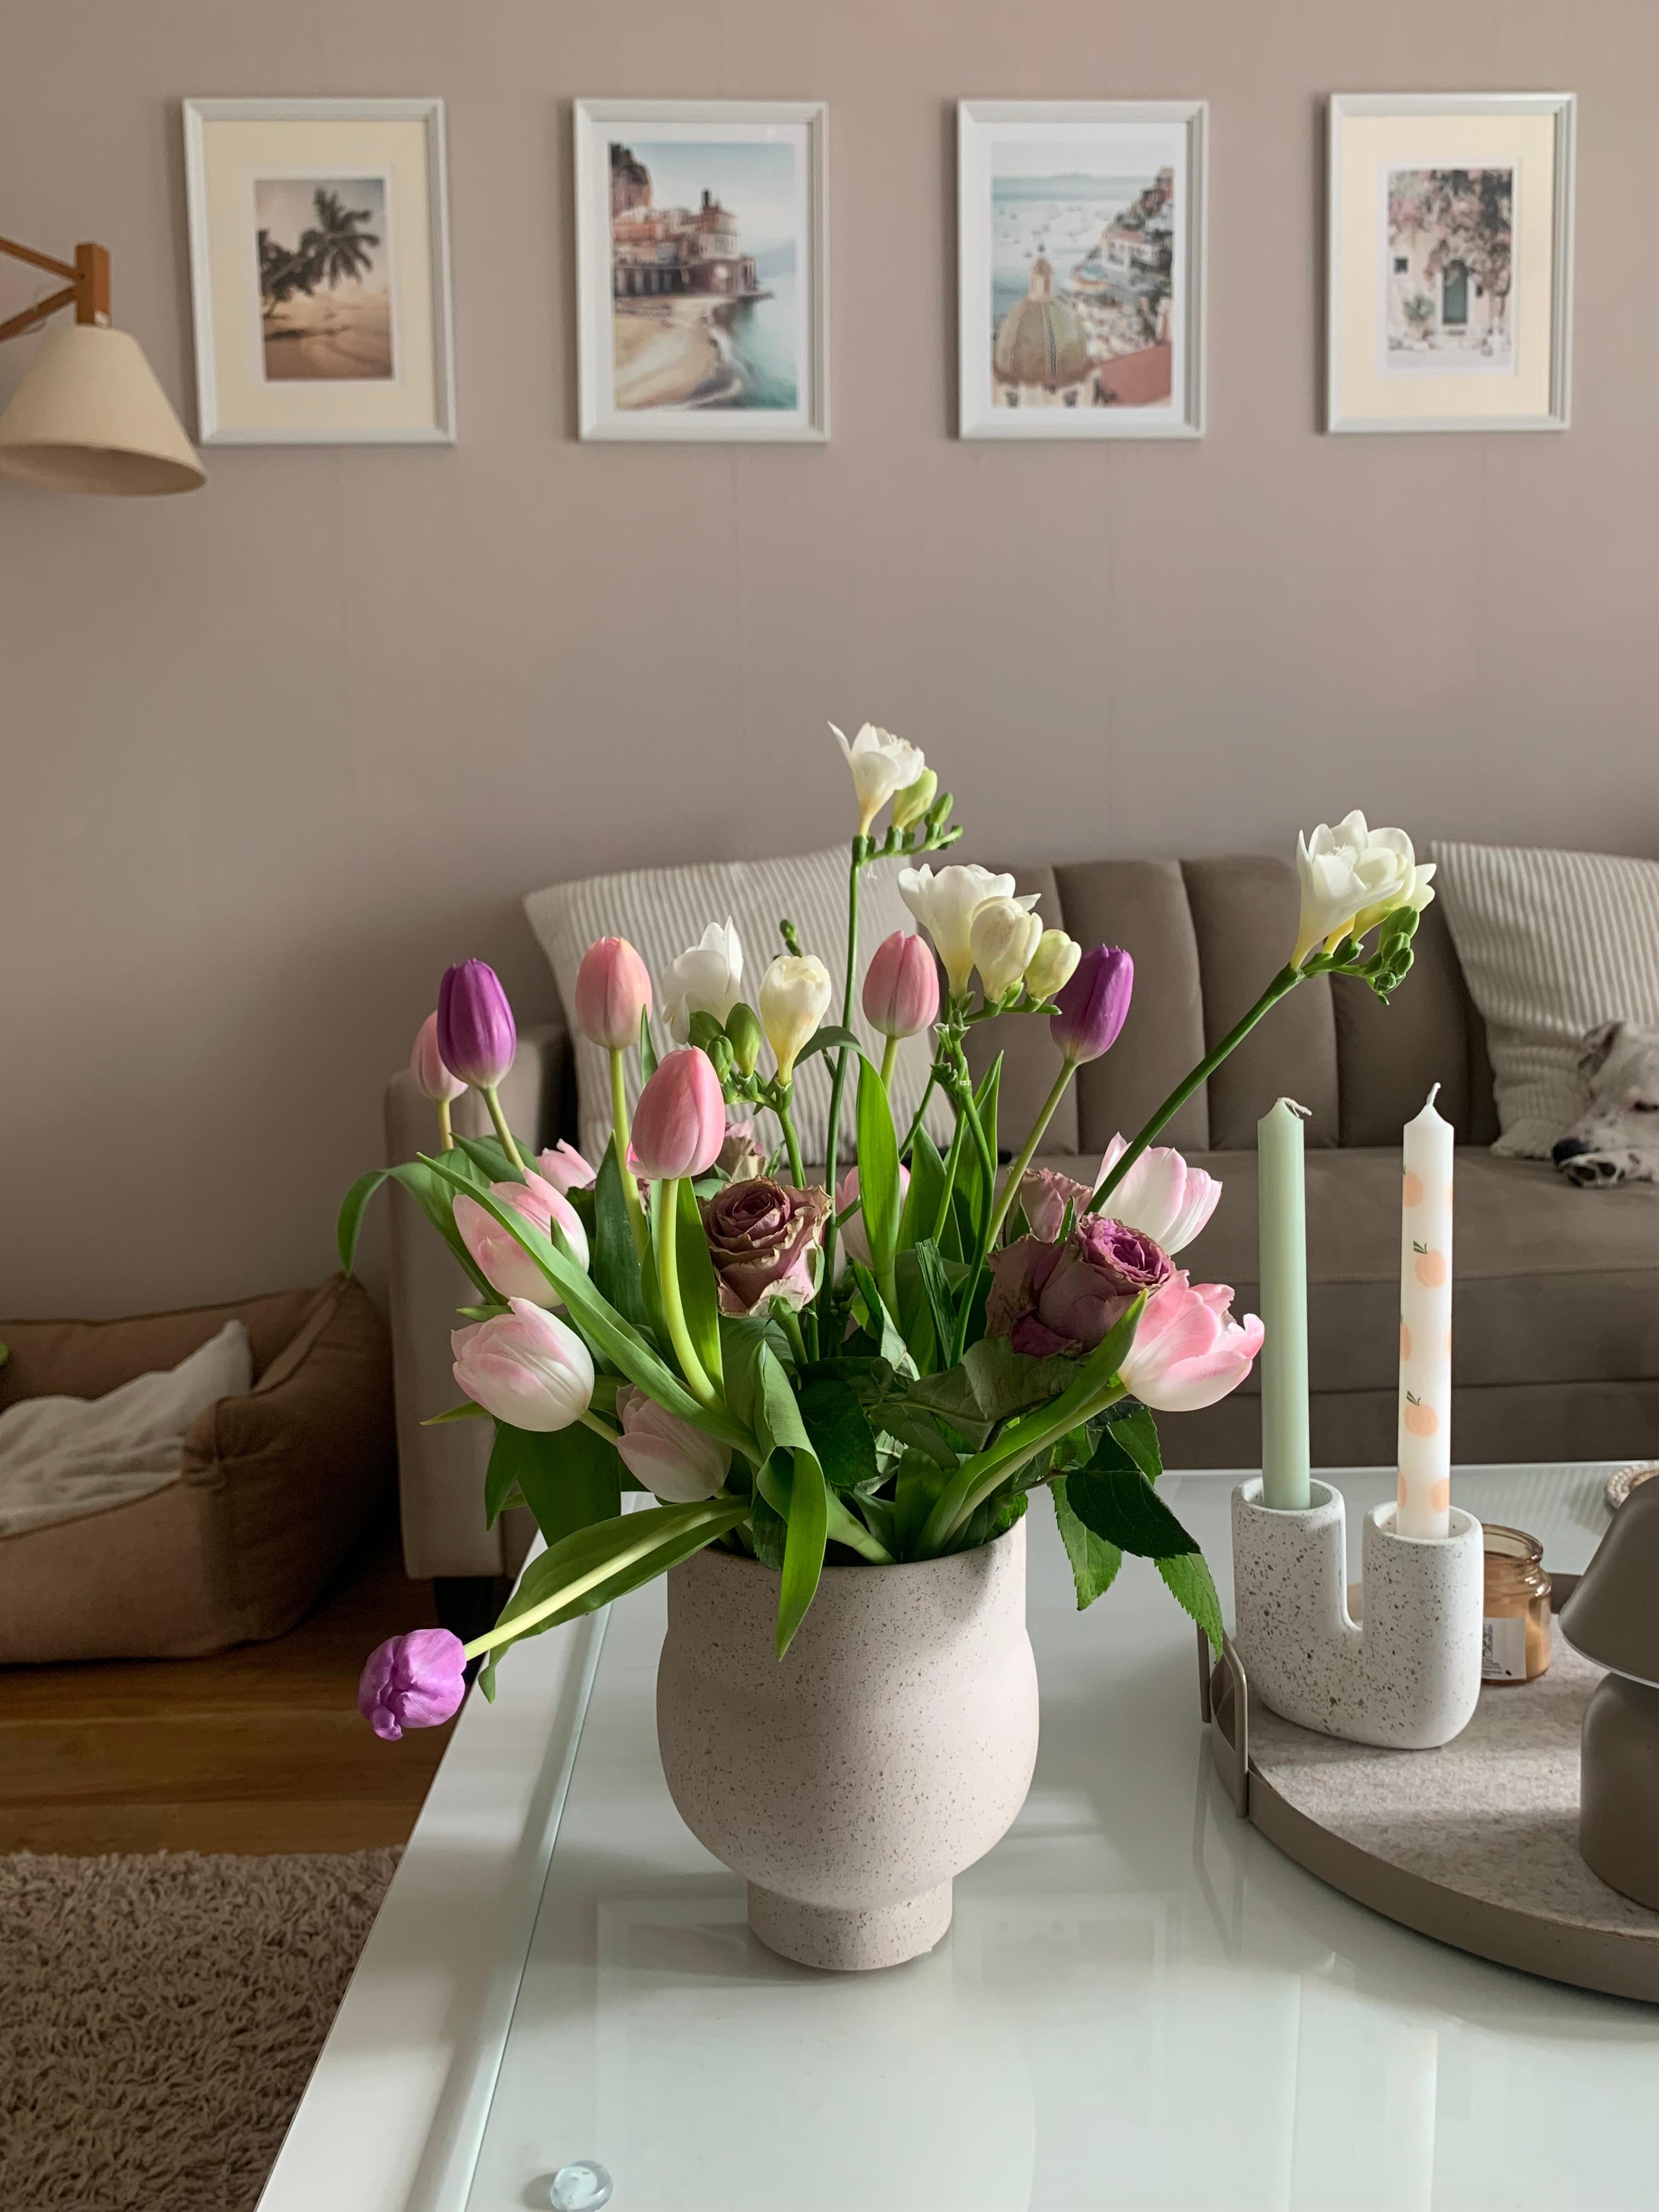 Gemütliche Zeit am Sonntag 🤍🤎

#flower #couch #wandbild #vase #couchtisch #hund #kissen #kerzen #wandfarbe #helleswohnen #lampe #hundebett 